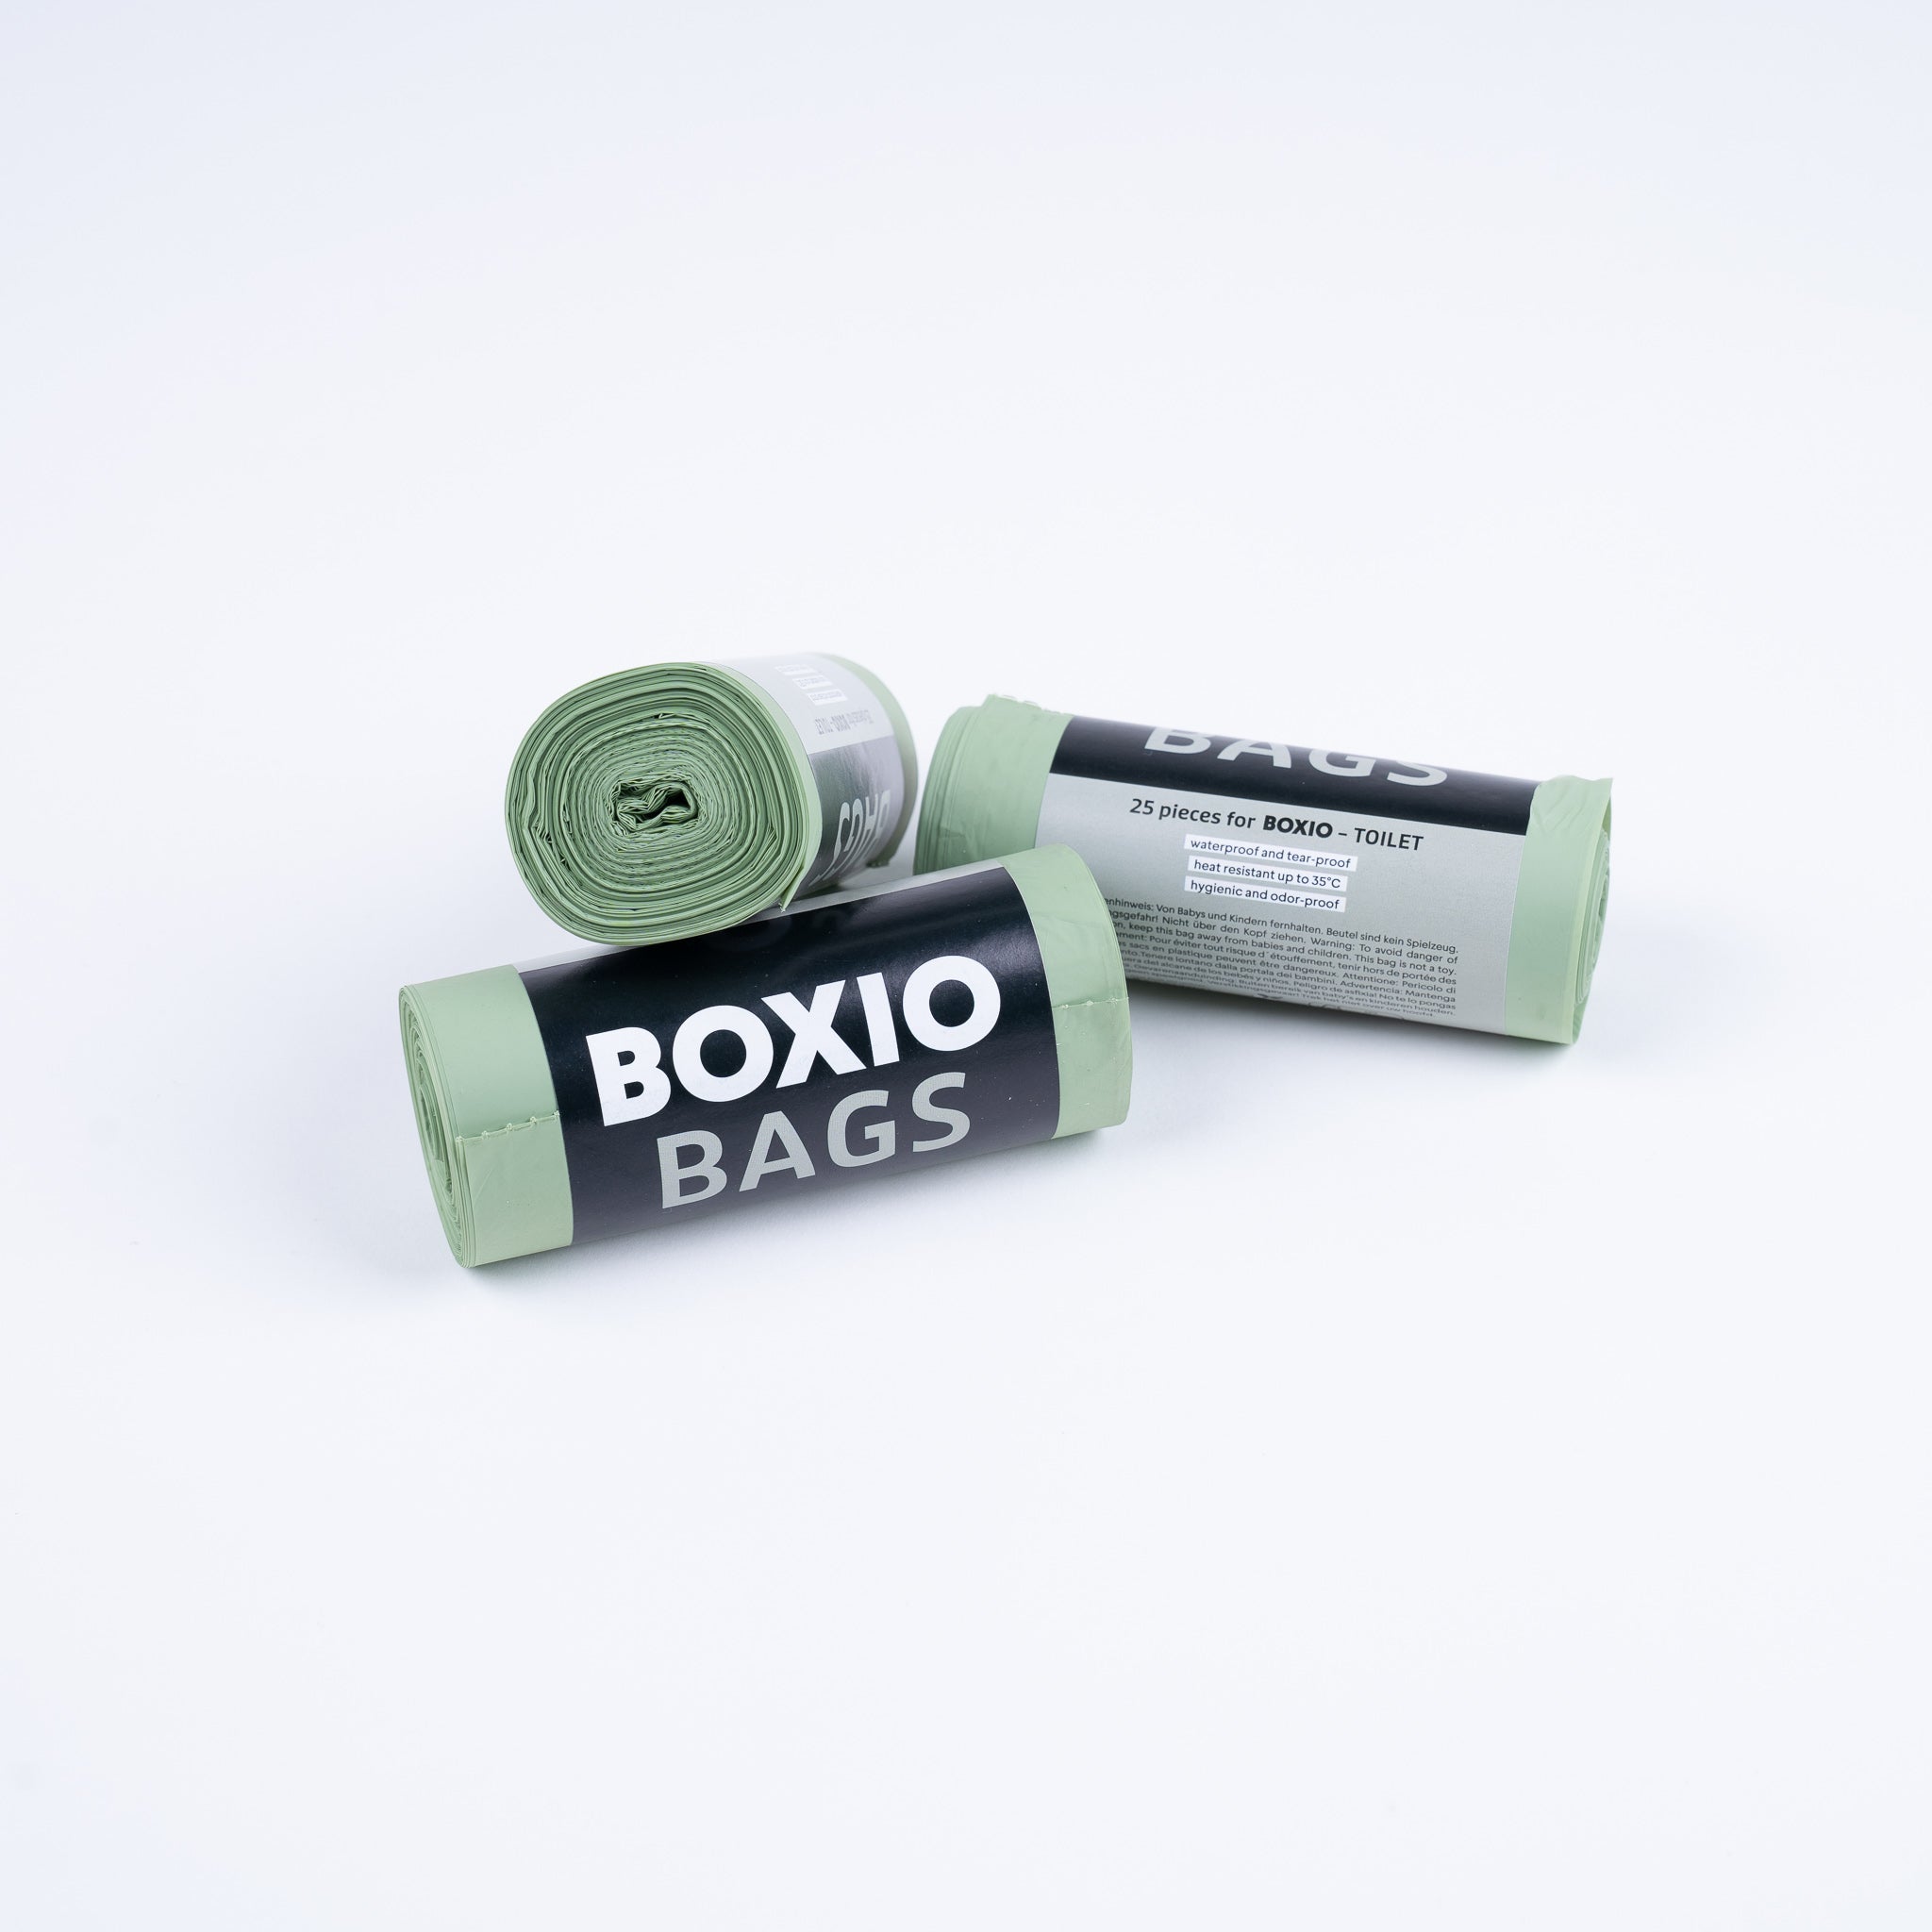 Buy BOXIO BIO Bag (25 pieces)